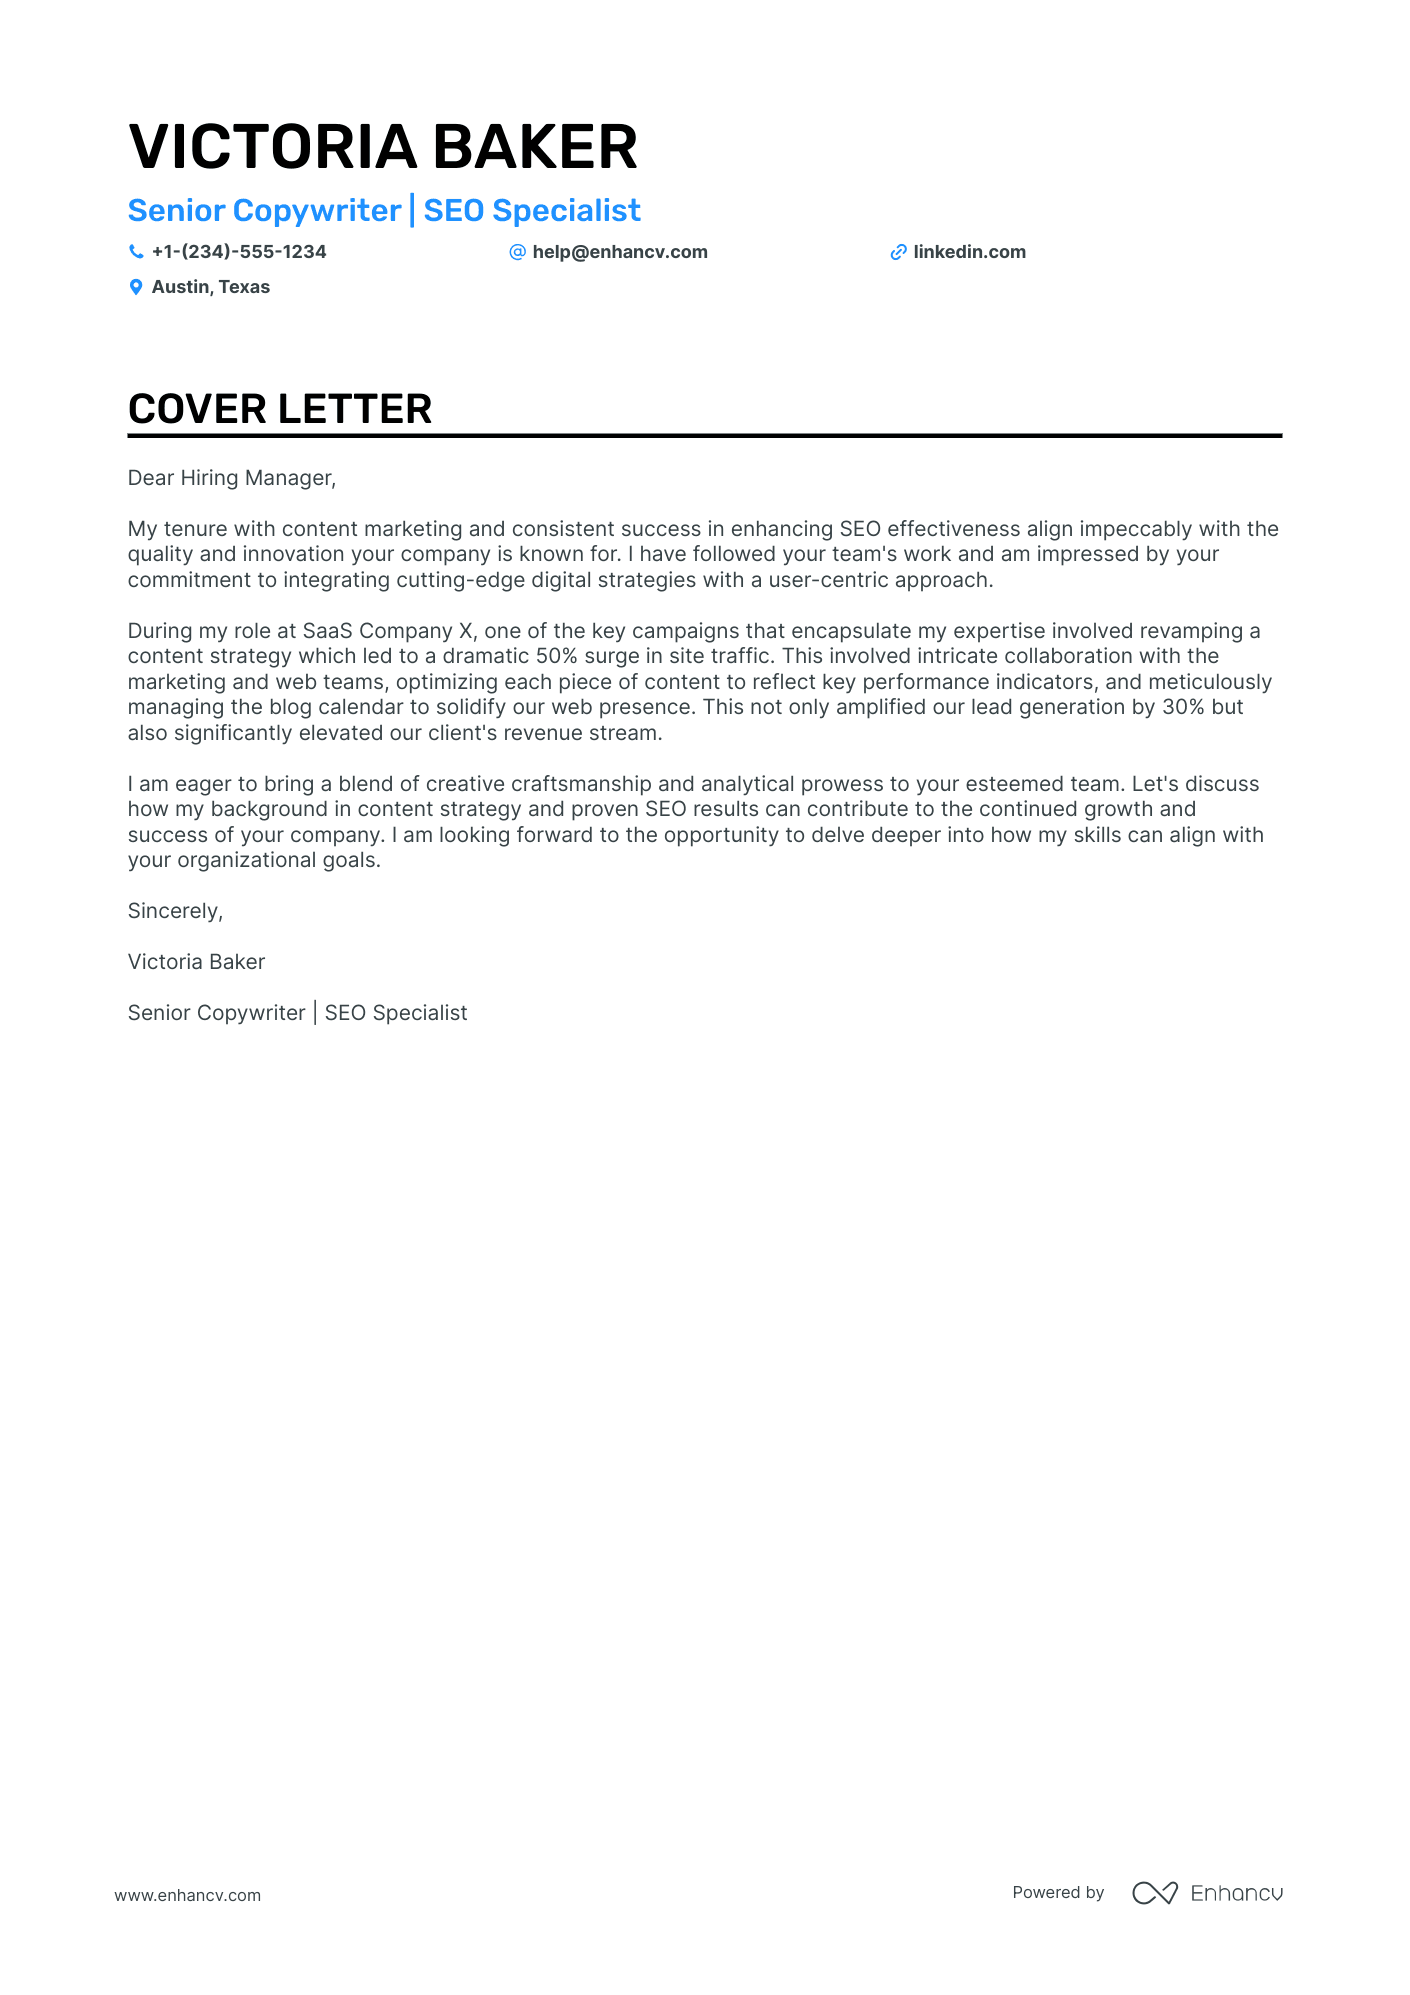 copywriter job cover letter